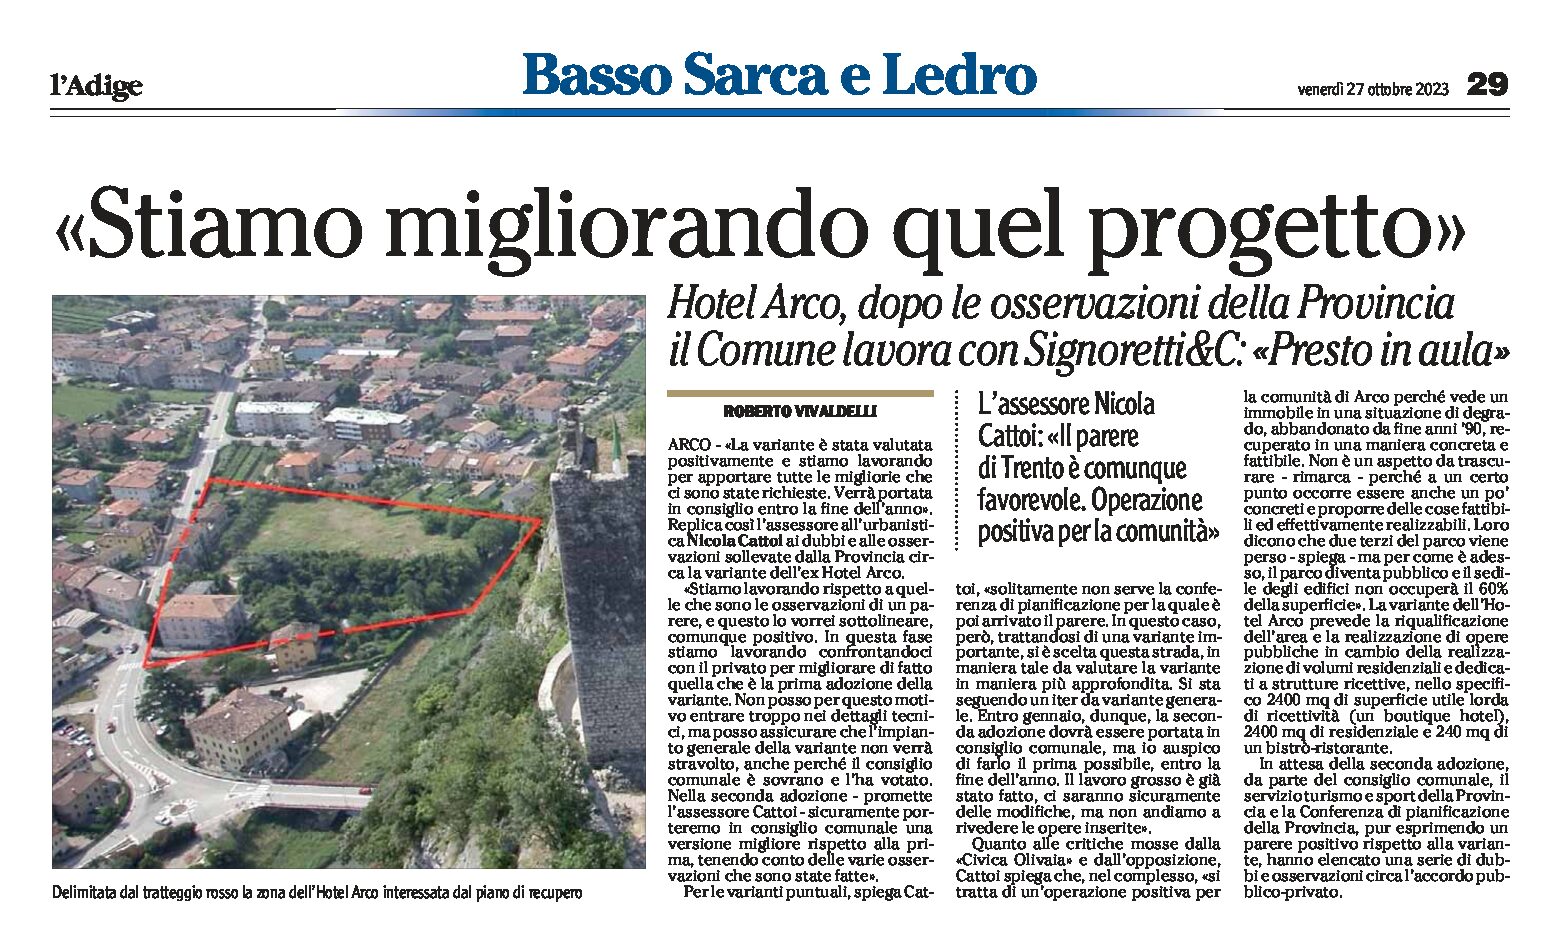 Arco: Hotel Arco, dopo le osservazioni della Provincia il Comune lavora con Signoretti&C e la variante verrà portata in consiglio entro fine anno